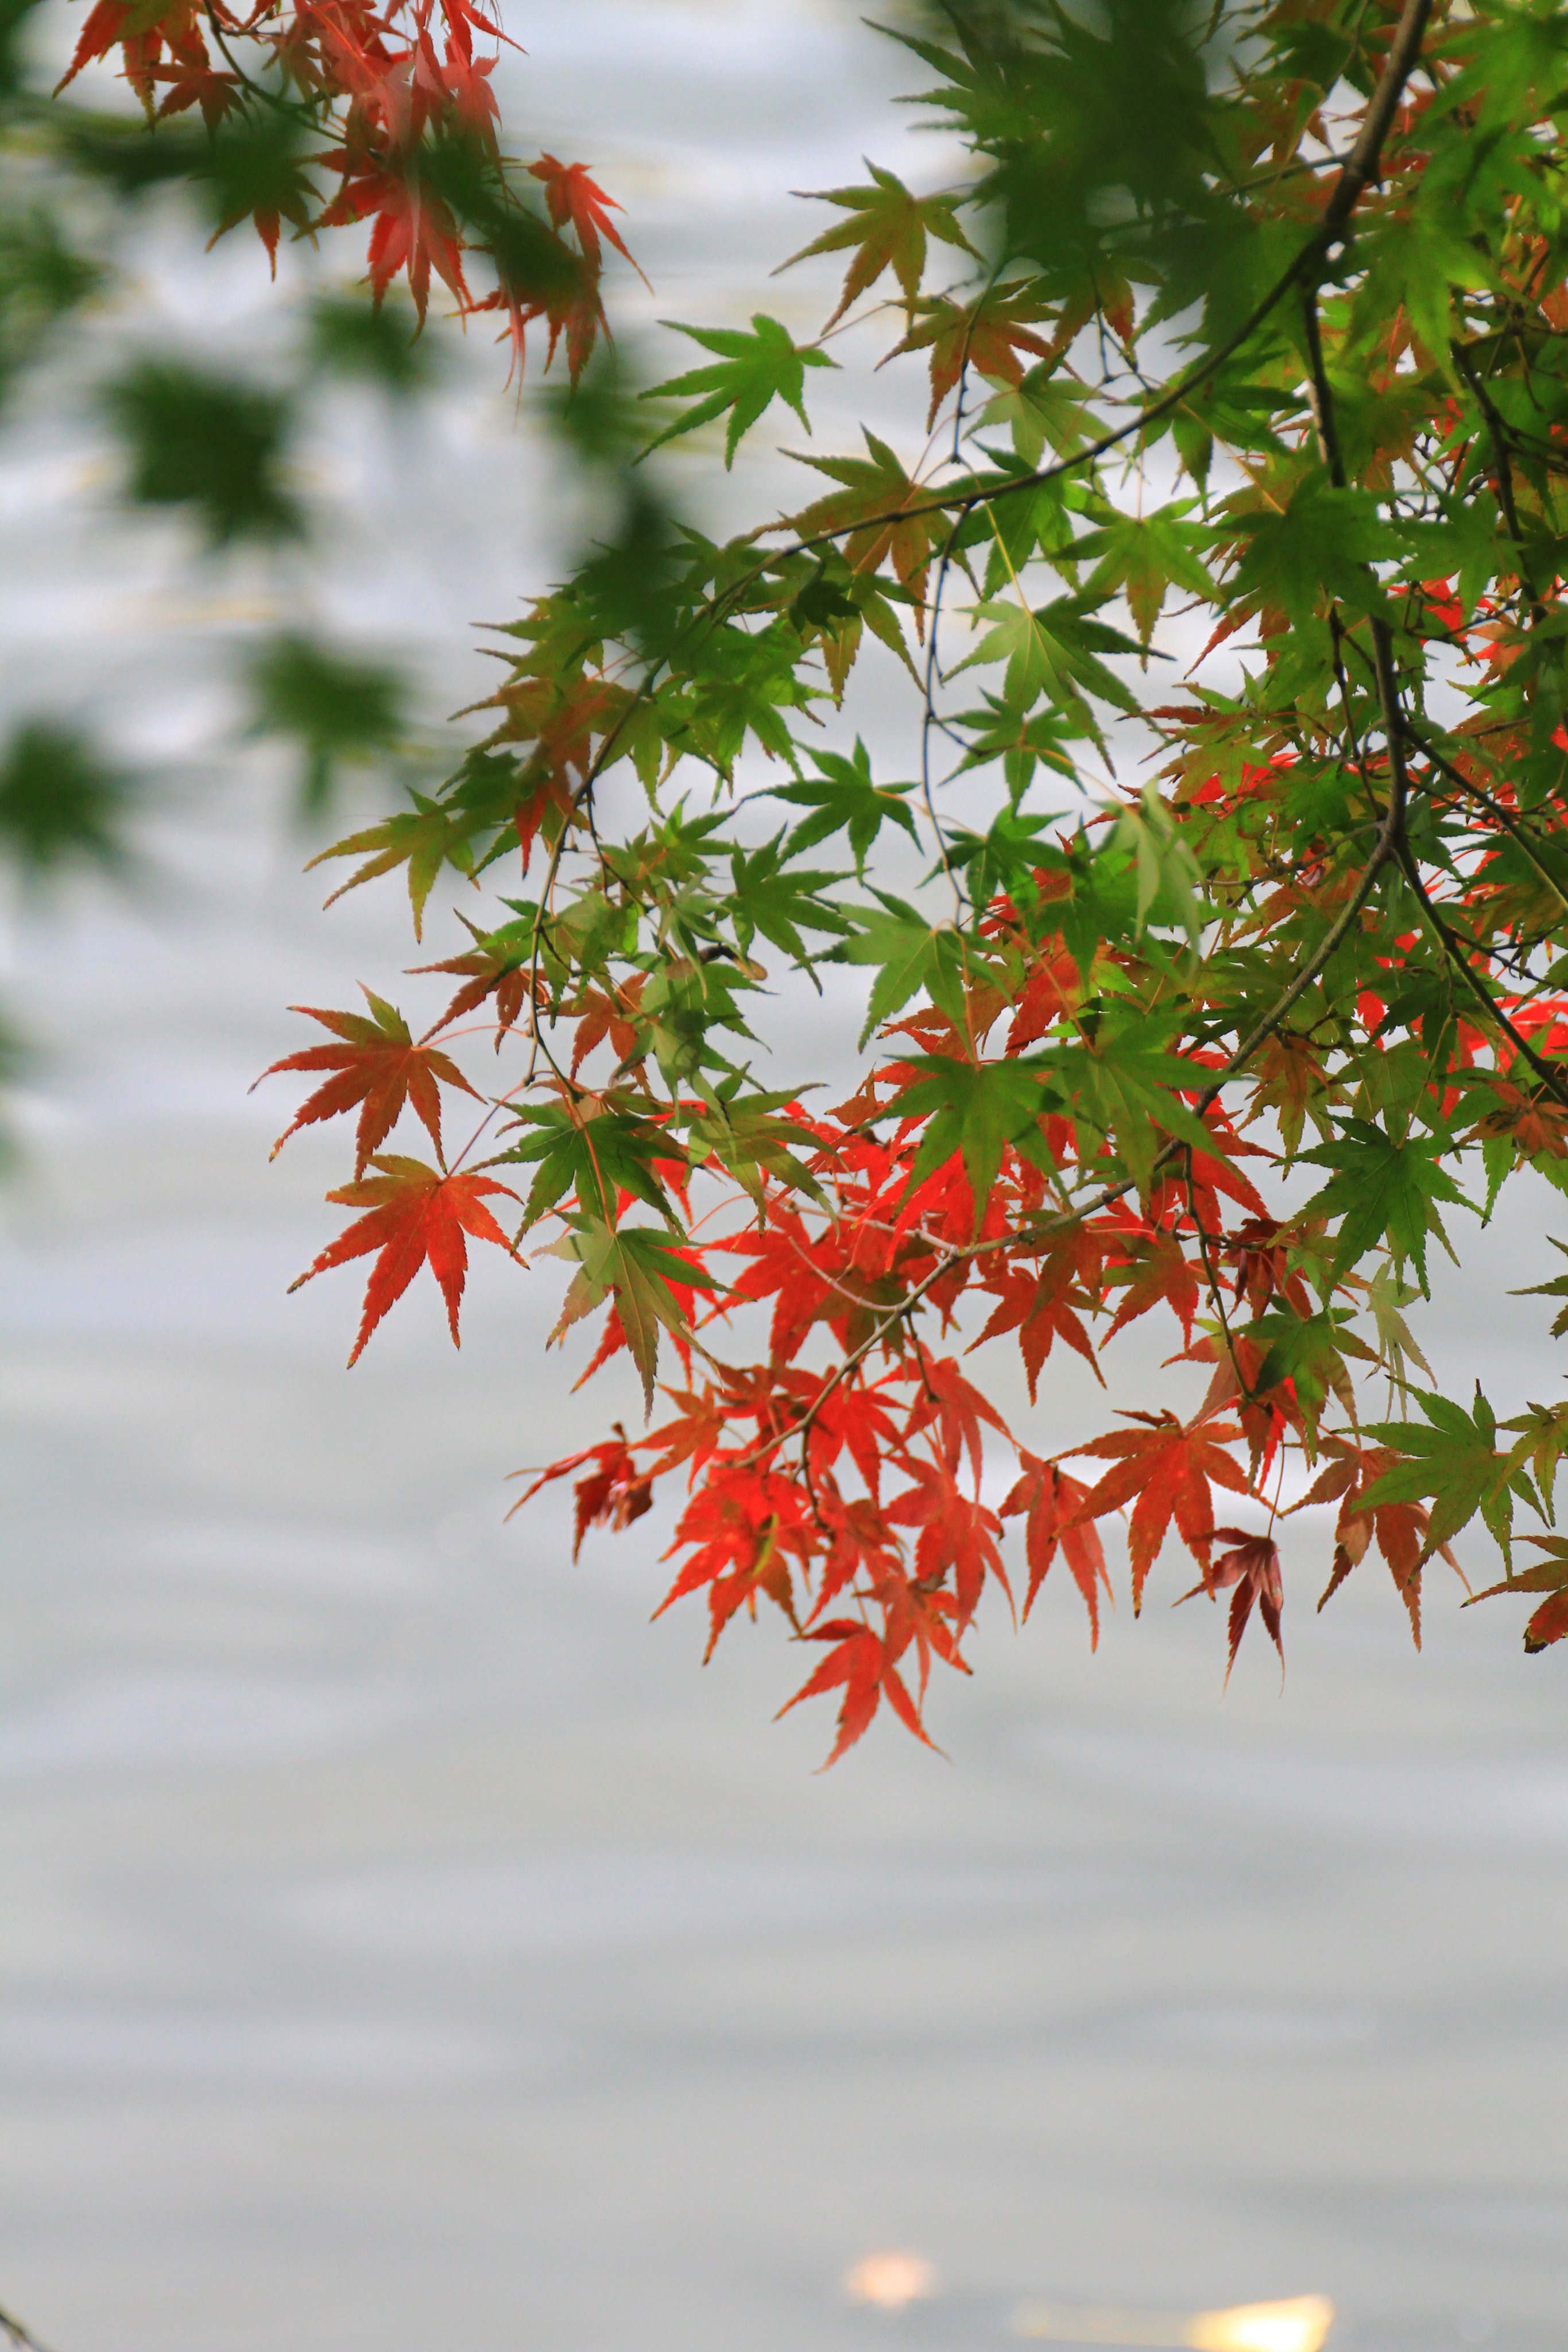 鏡 楓の花言葉 調和 美しい変化 大切な思い出 遠慮 日本の秋を彩る優しく繊細な風景がそこにはありました T Co Dzjqeg1ubr Twitter